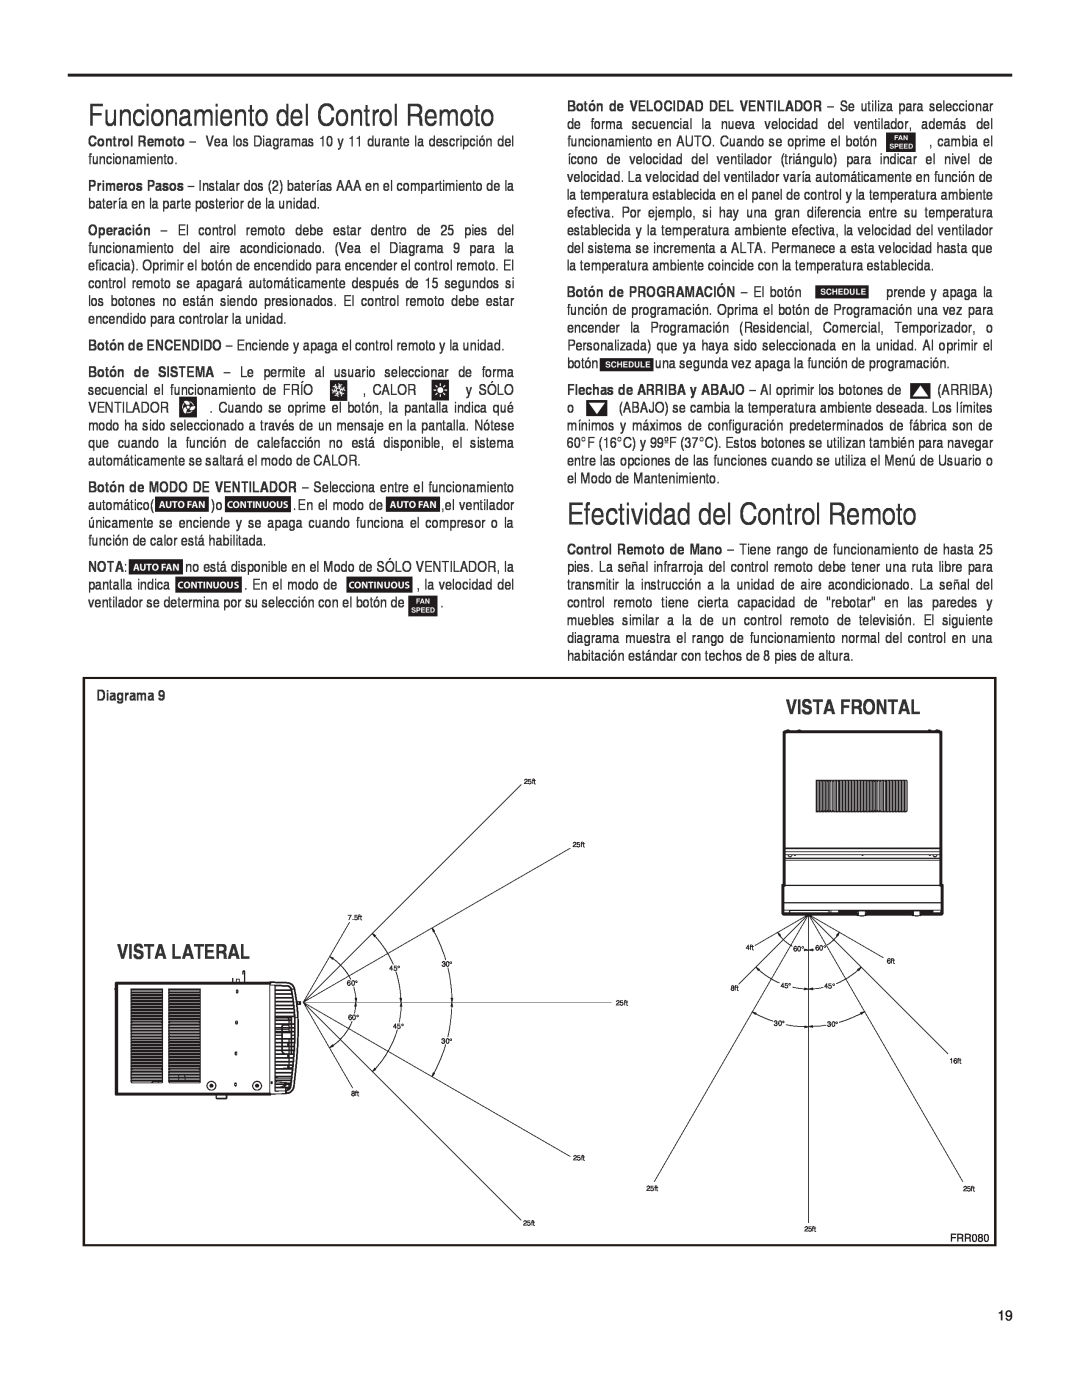 Friedrich SQ08 Funcionamiento del Control Remoto, Efectividad del Control Remoto, Vista Frontal, Vista Lateral, Diagrama 